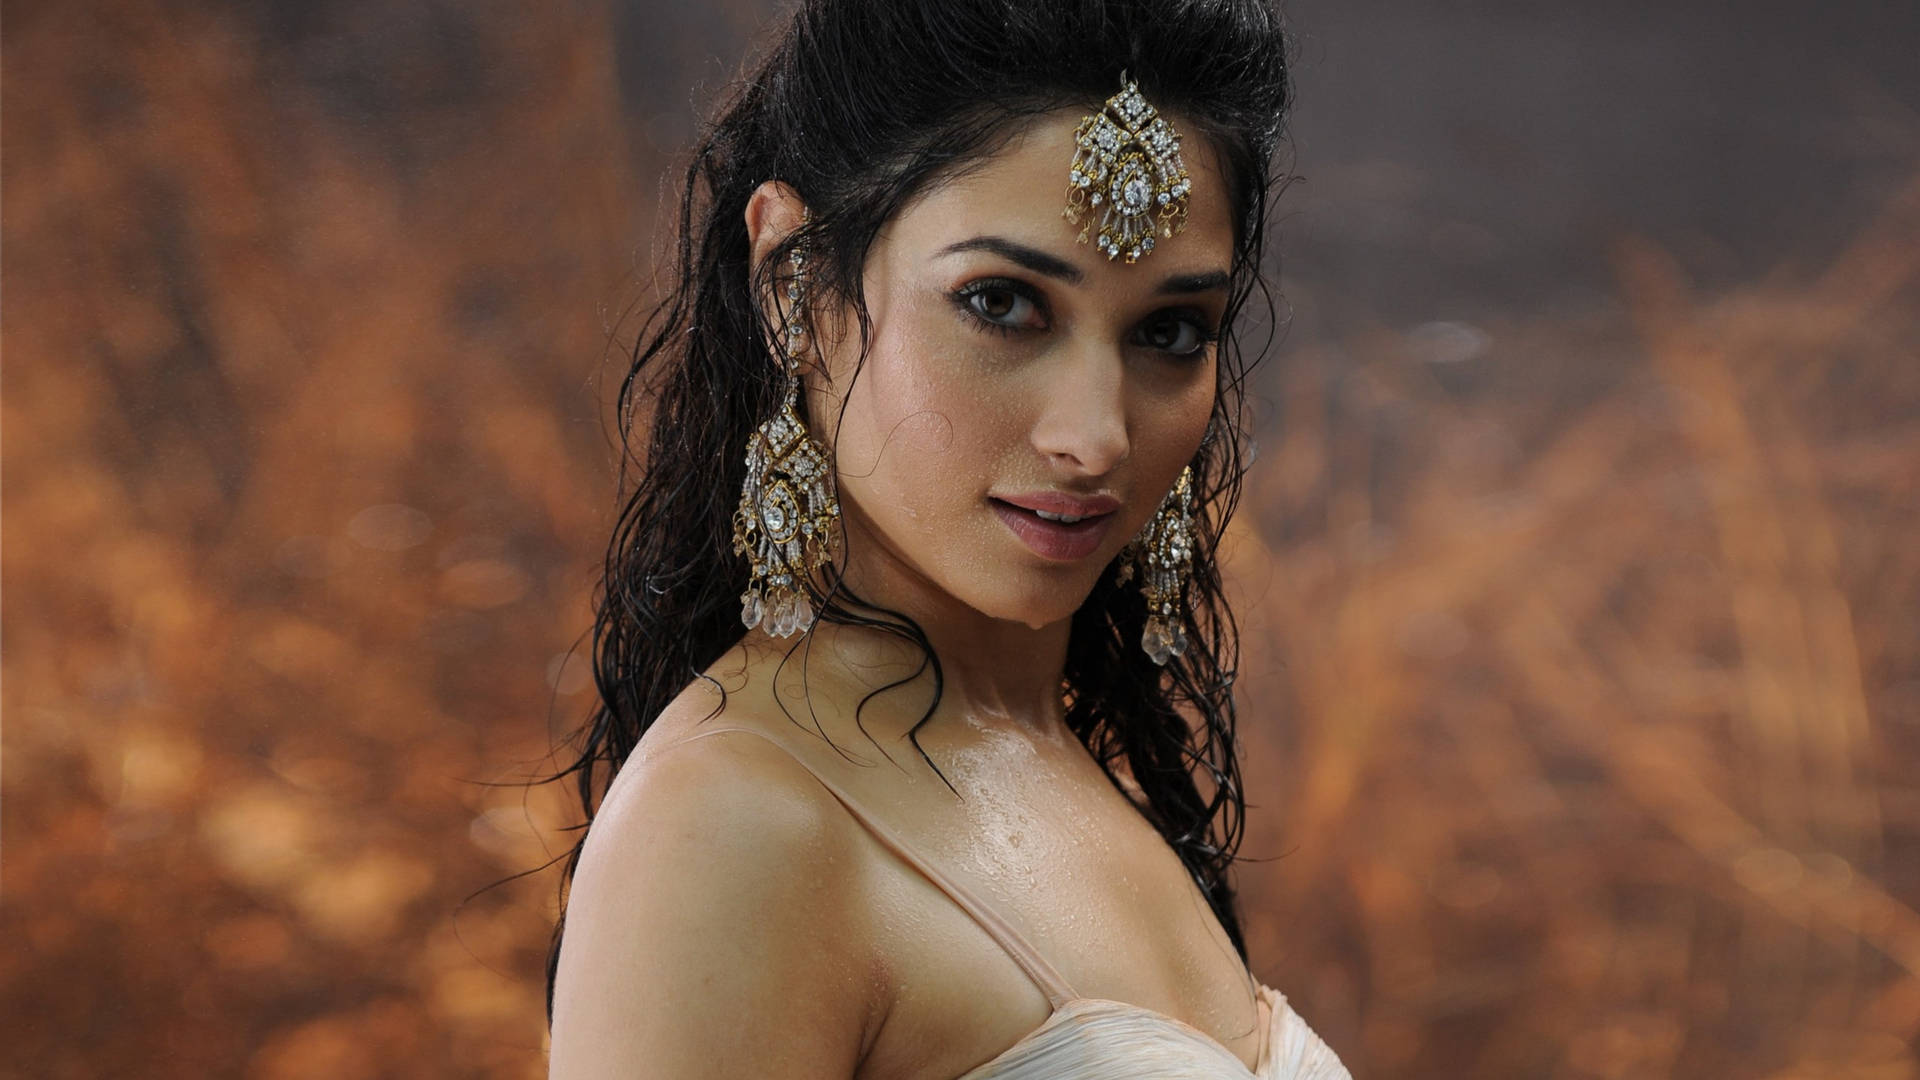 Jagvill Ha En Behändig Och Snygg Bollywood-skådespelerska Tamannaah Bhatia Som Min Dator- Eller Mobilbakgrundsbild. Wallpaper